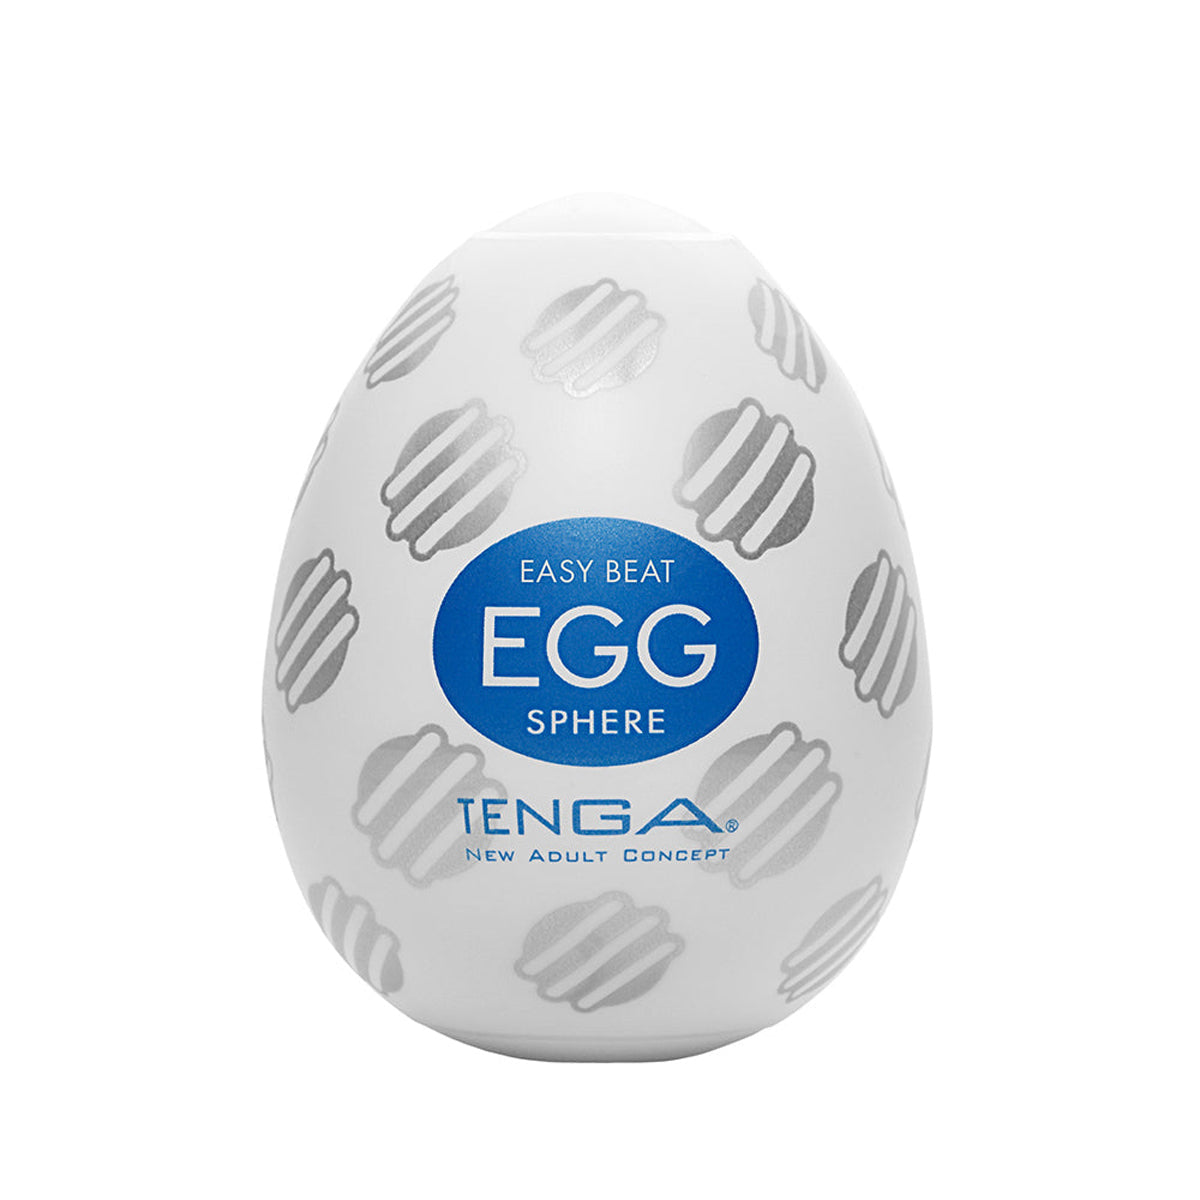 Tenga - Egg Masturbator -  Sphere